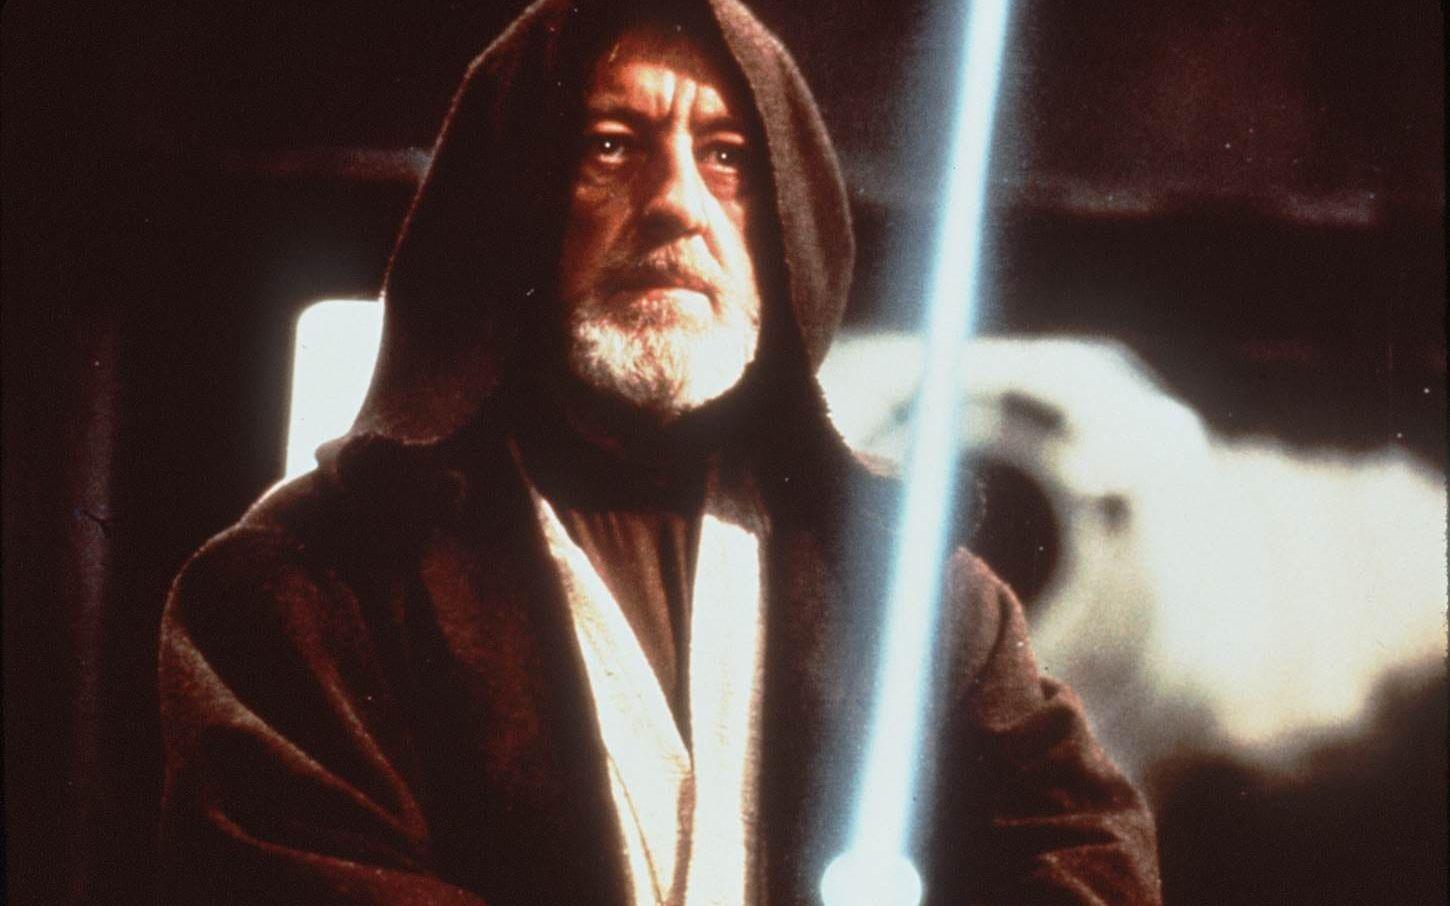 <strong>OBIWAN KENOBI SKULLE HA ÖVERLEVT.</strong> Från början var tanken att Obiwan Kenobi skulle överleva mötet med Darth Vader. Det var Lucas dåvarande fru, Marcia, som föreslog att Ben skulle offras. "Det gjorde hotet från Darth Vader bara ännu större", beskriver George Lucas i <a href="http://www.news.com.au/finance/business/media/the-secret-weapon-behind-star-wars/news-story/75eb078a8b14d93fce23b06e98805ffb">en intervju</a>. Foto: TT